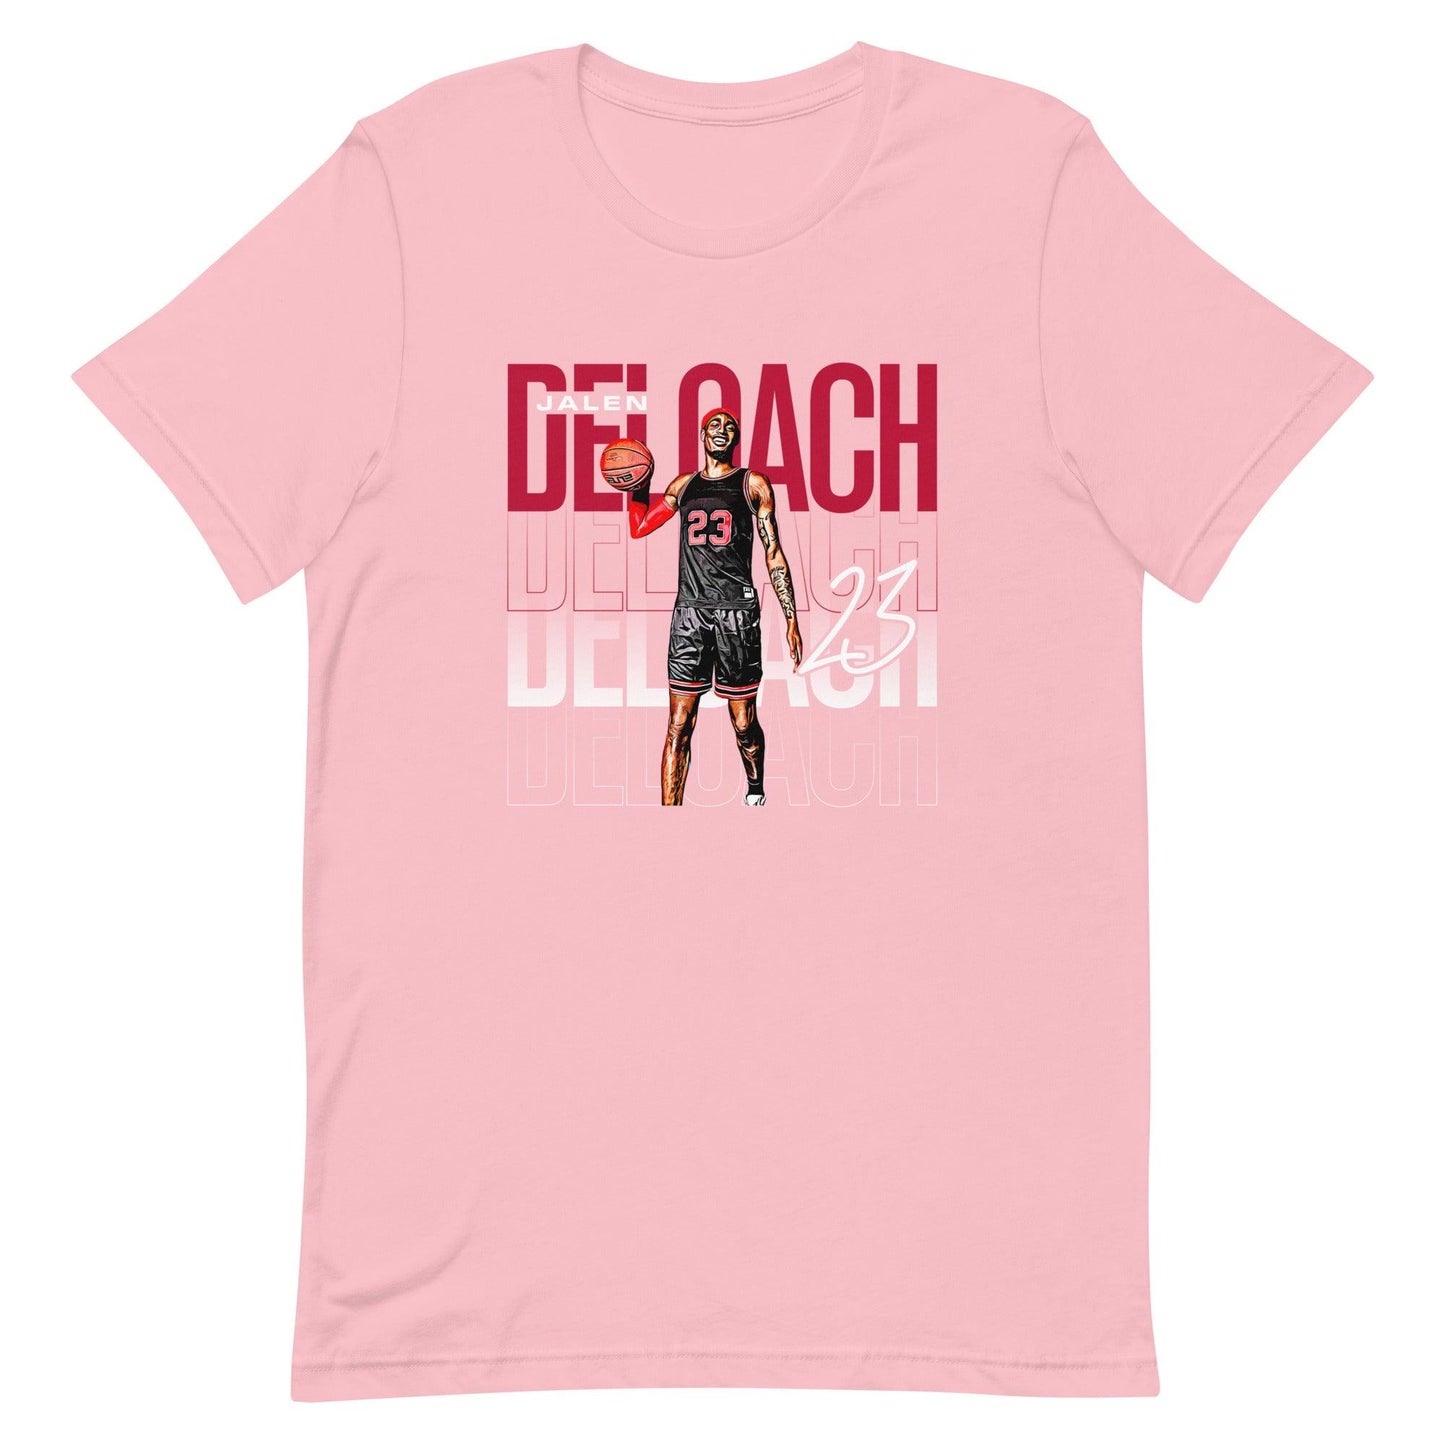 Jalen Deloach "Gameday" t-shirt - Fan Arch